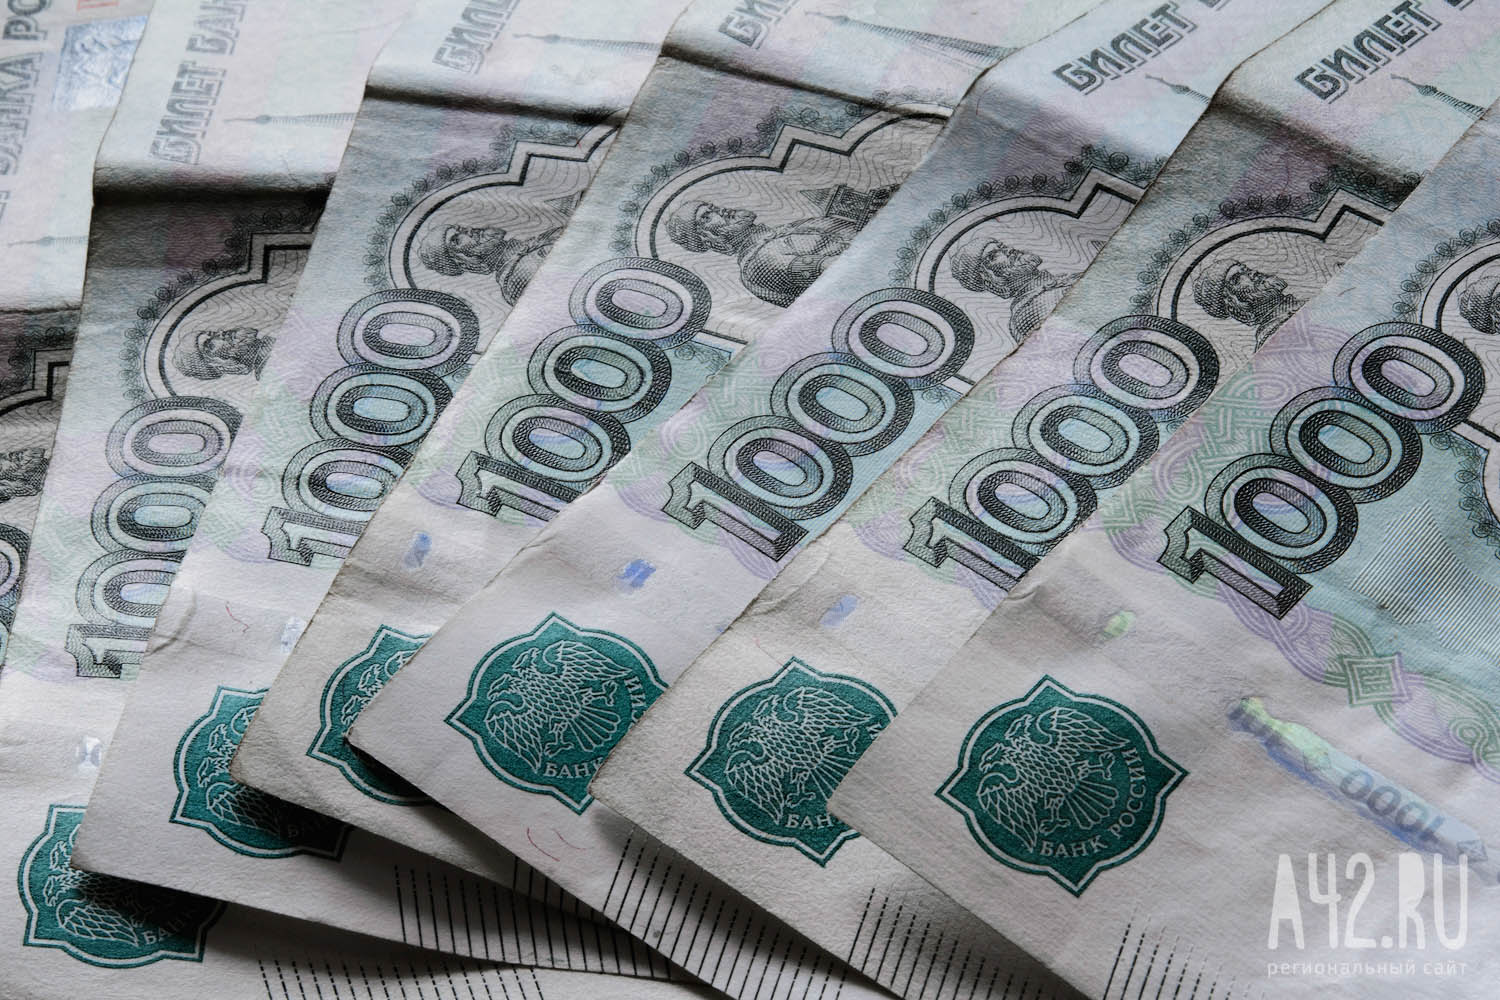 ФНС обязала блогера Лерчек выплатить 124 млн рублей за неуплату налогов 